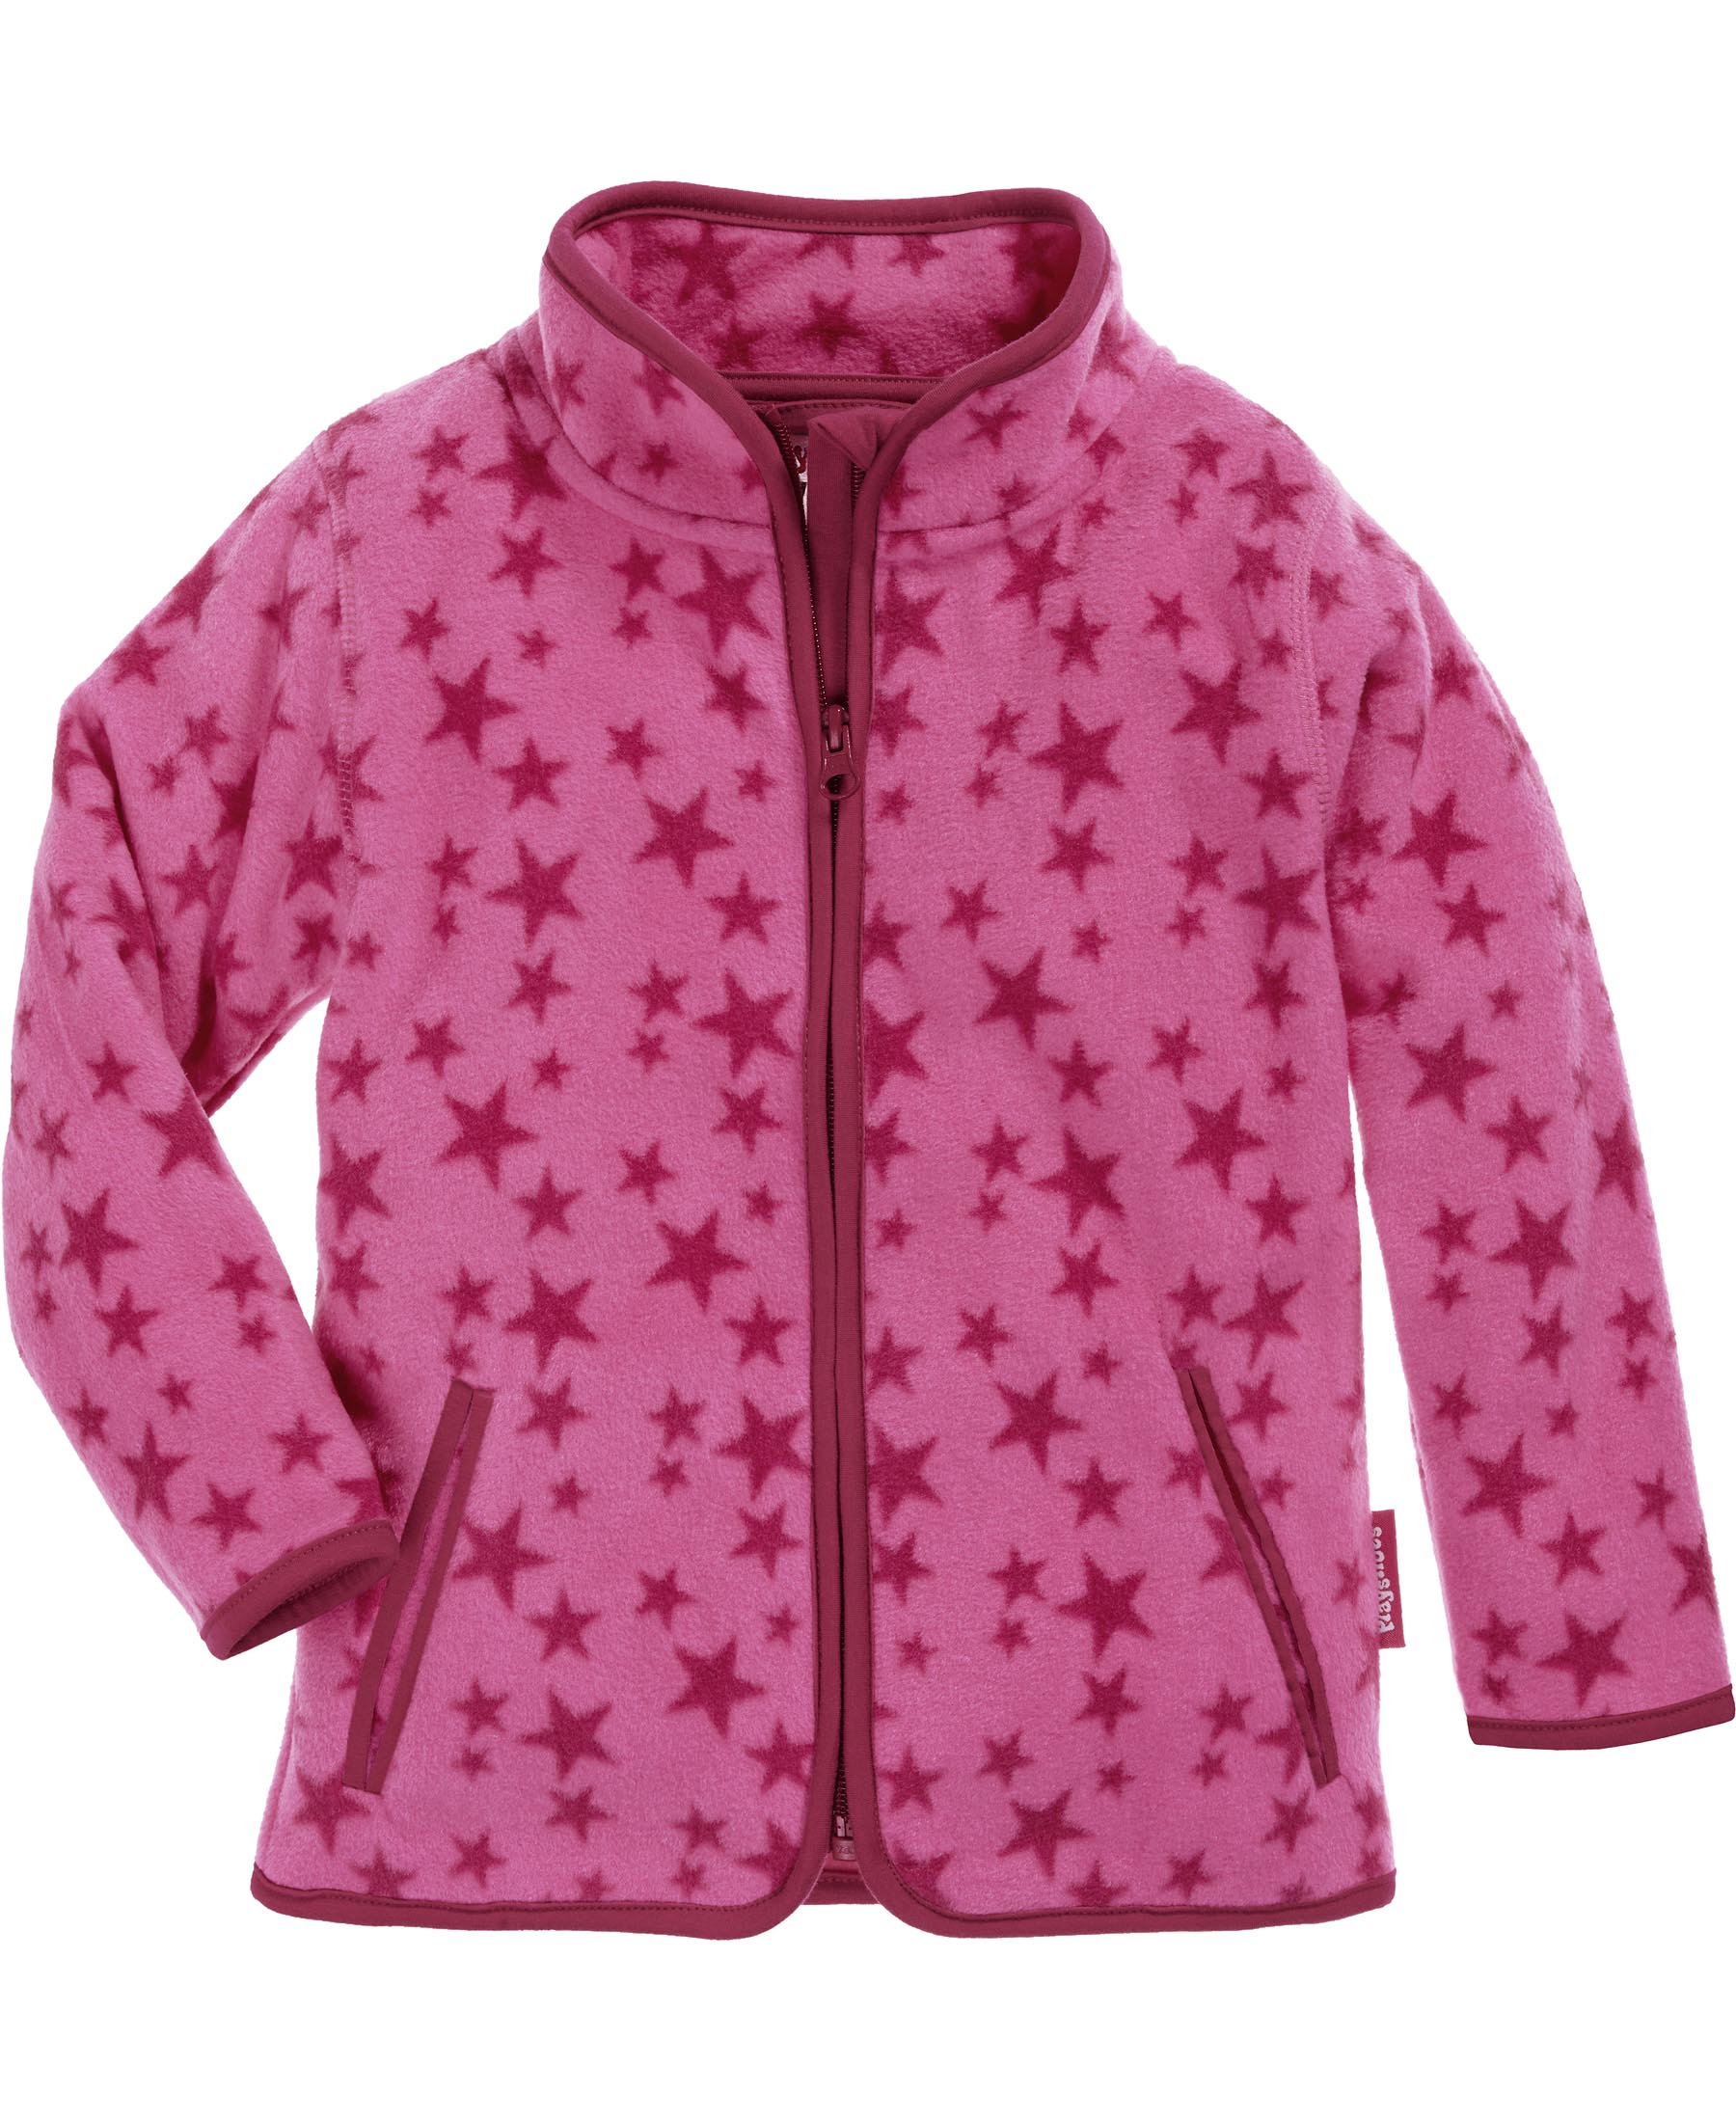 Флисовая куртка Playshoes Fleece Jacke Sterne, розовый